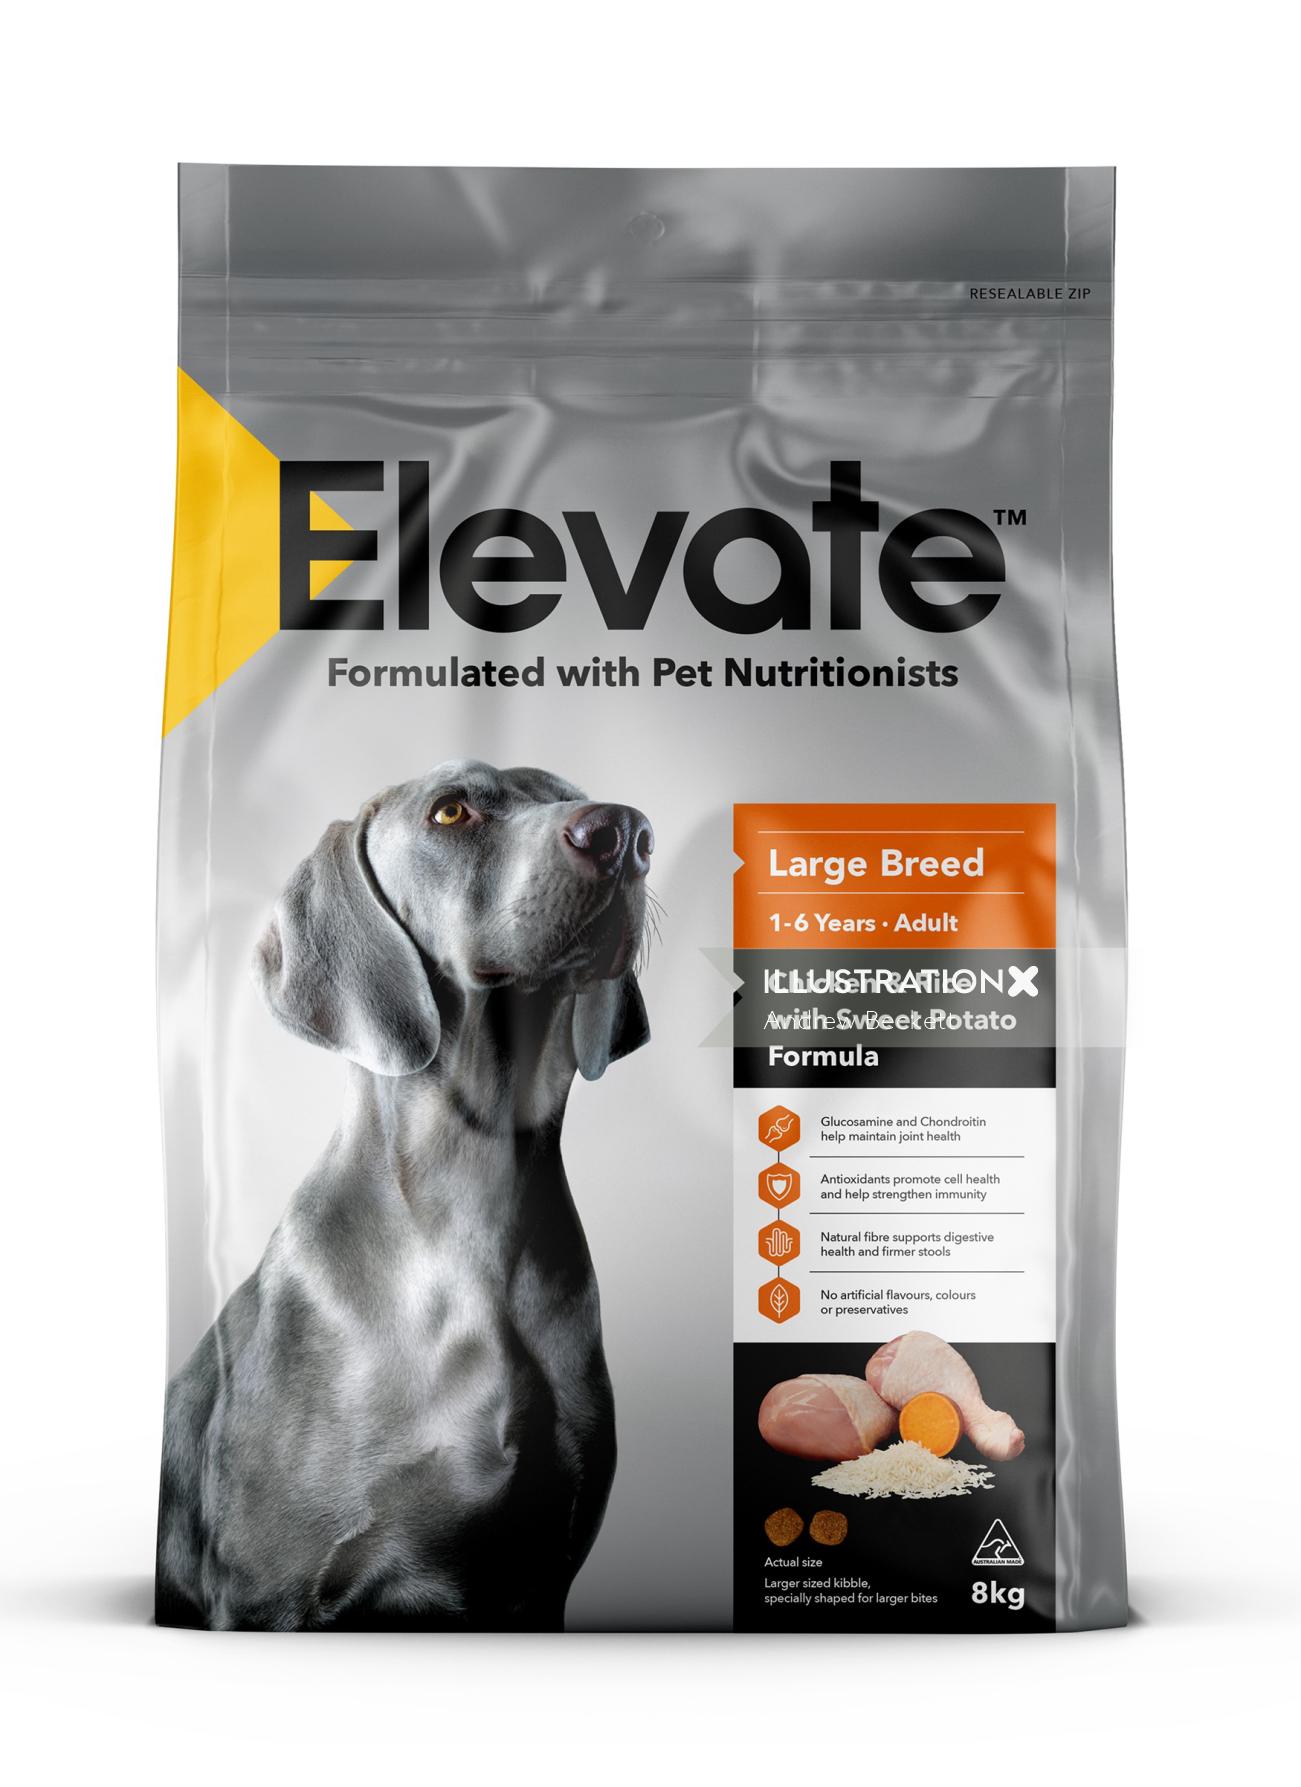 Packaging of Elevate Pet Food Range